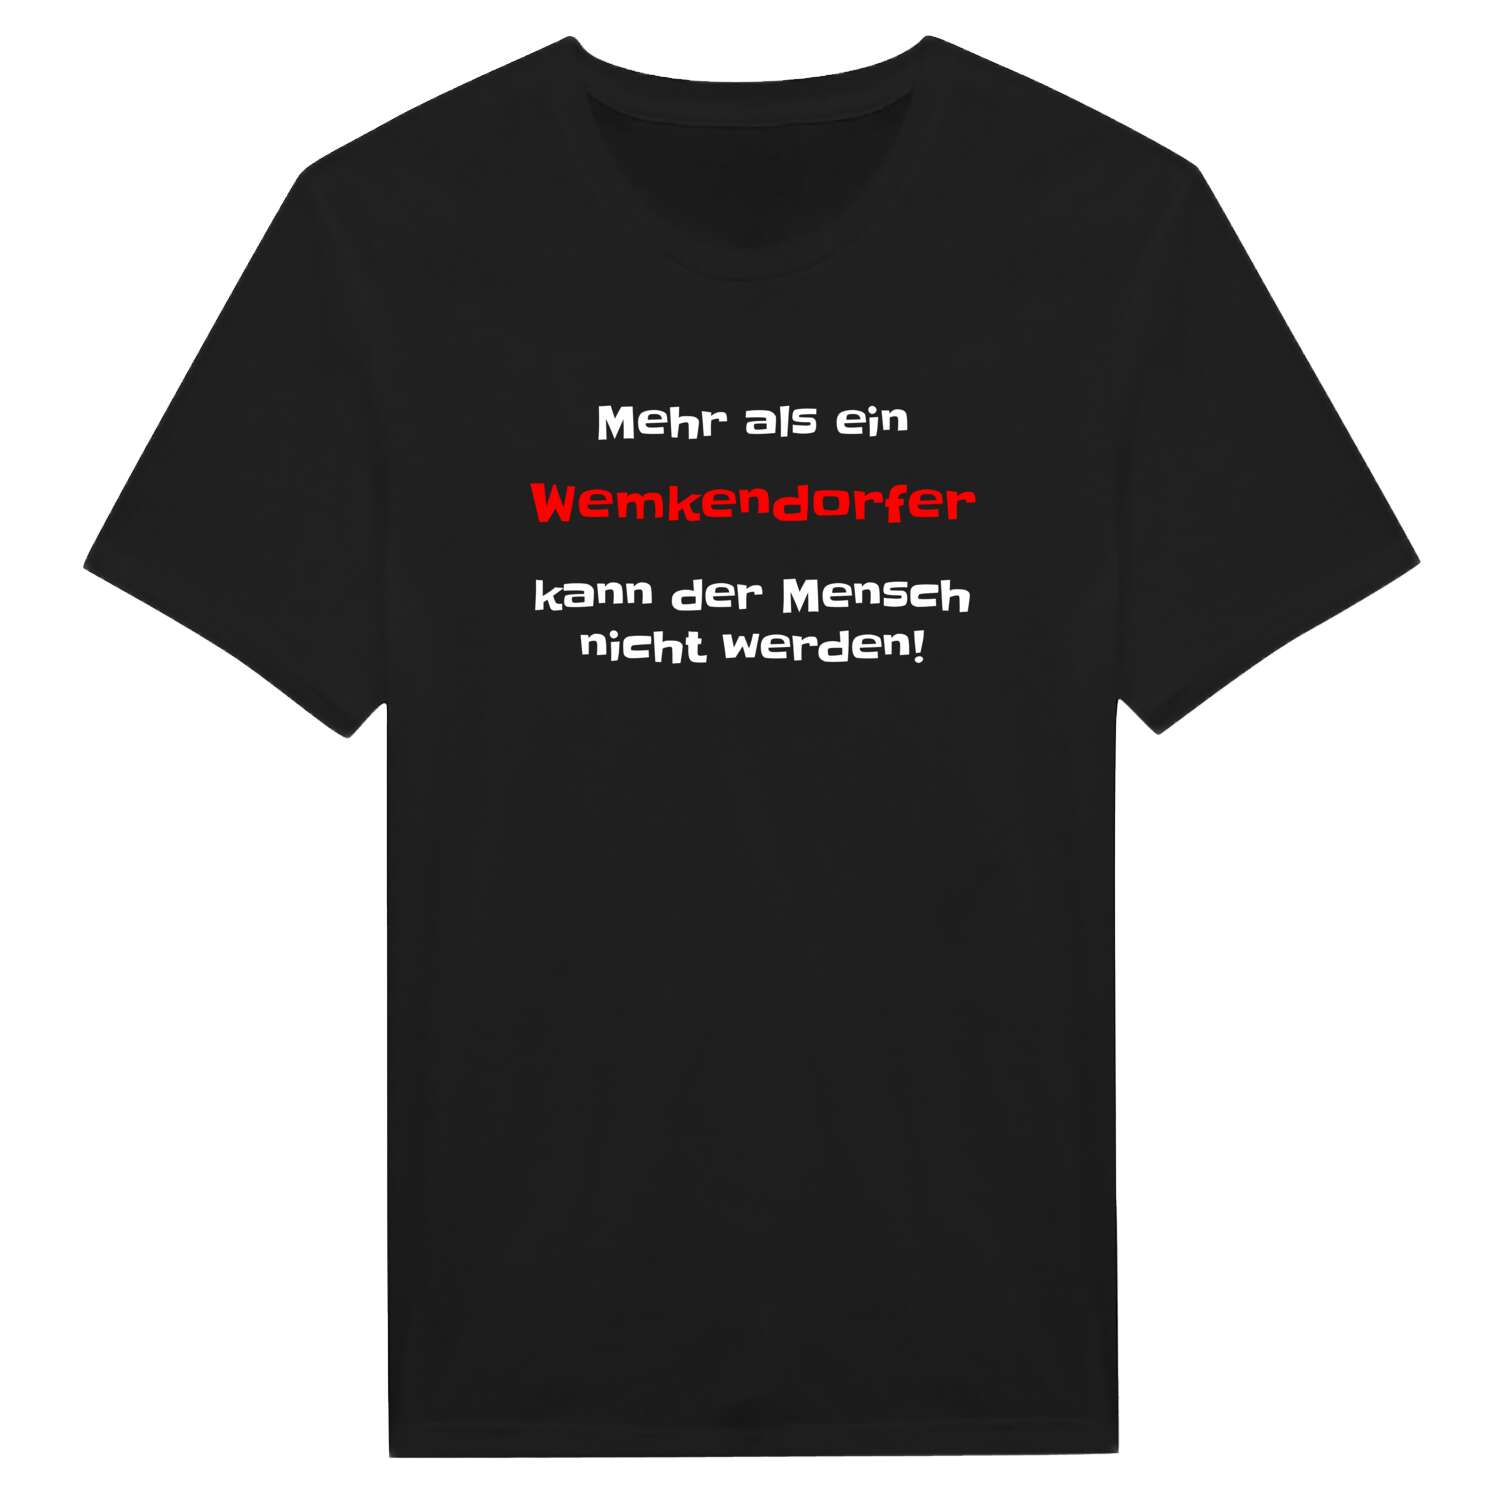 Wemkendorf T-Shirt »Mehr als ein«